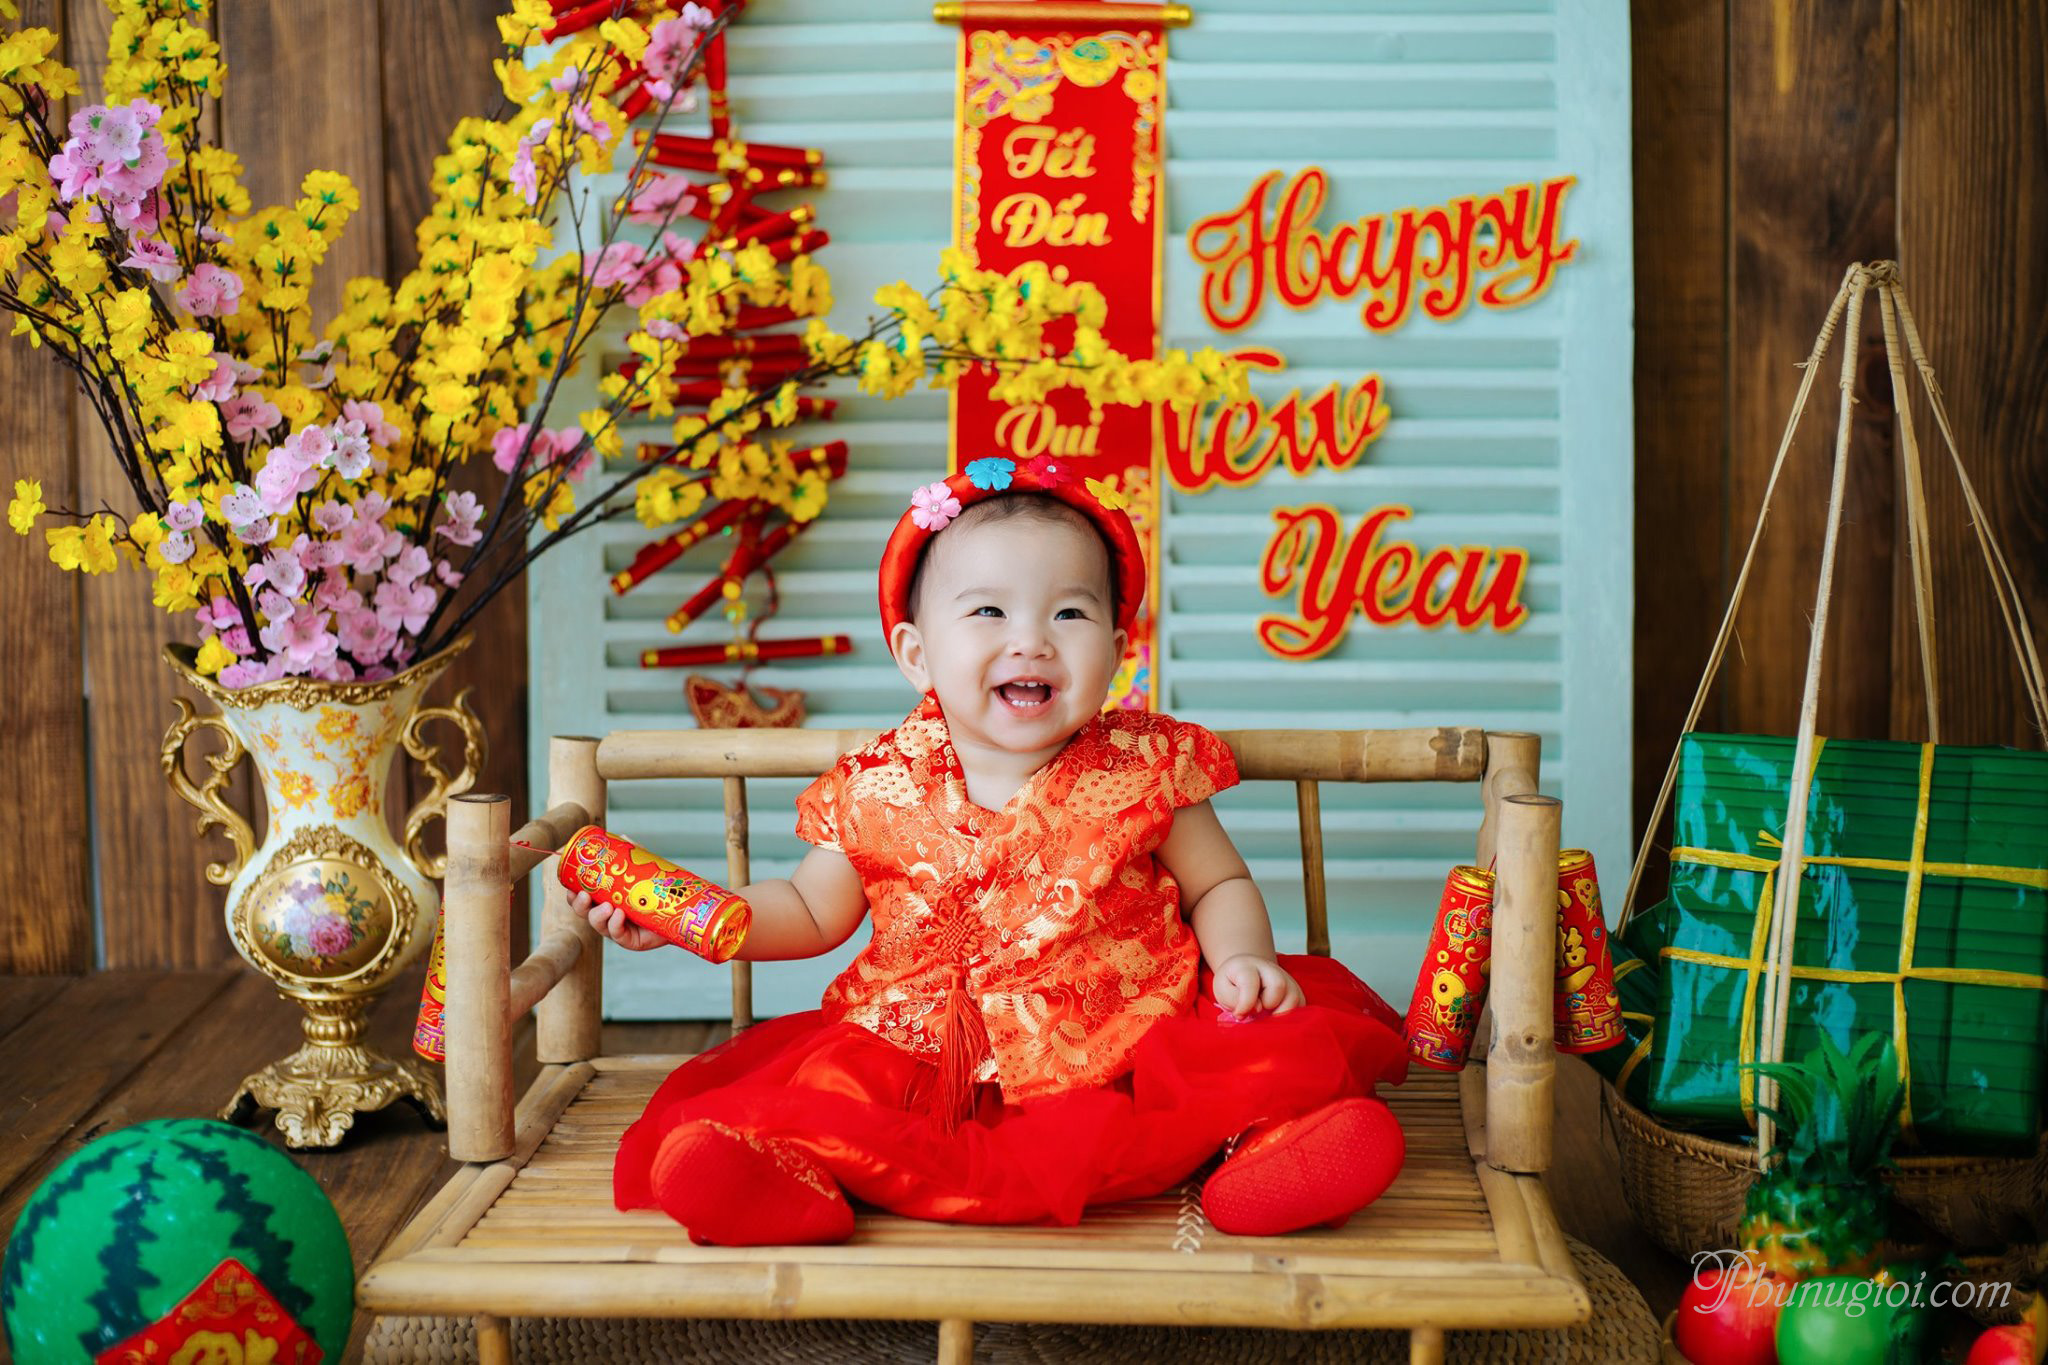 Chúc mừng năm mới: Đón năm mới đầy hạnh phúc và may mắn với những lời chúc tốt đẹp dành cho người thân, bạn bè và gia đình. Hãy cùng xem những bức ảnh tuyệt đẹp phản ánh không khí tràn đầy niềm vui, sự háo hức của người dân Việt Nam trong dịp đón Tết và cùng chúc mừng năm mới may mắn, thành công!